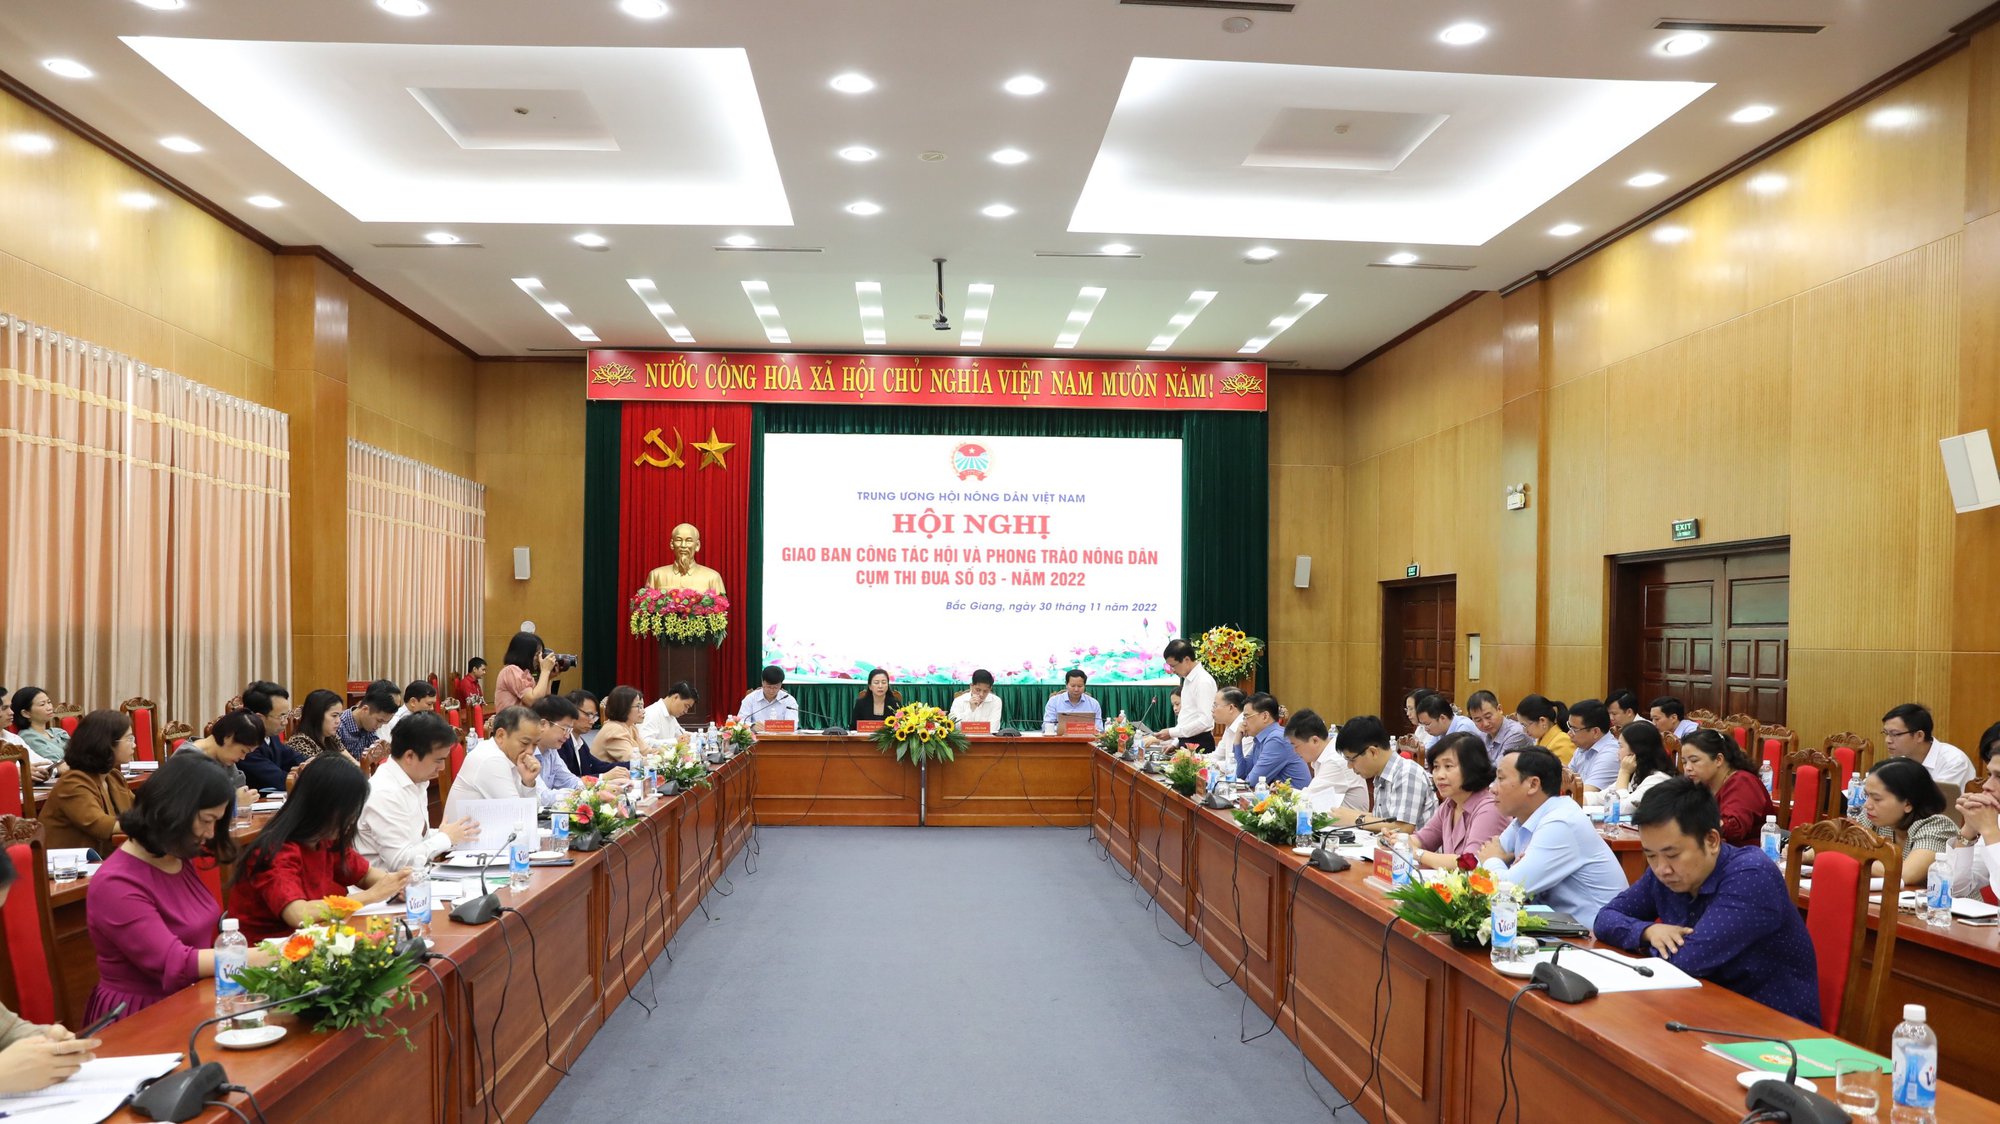 Phó Chủ tịch Thường trực Hội NDVN Phạm Tiến Nam chủ trì Hội nghị giao ban Cụm thi đua số 3 - Ảnh 3.